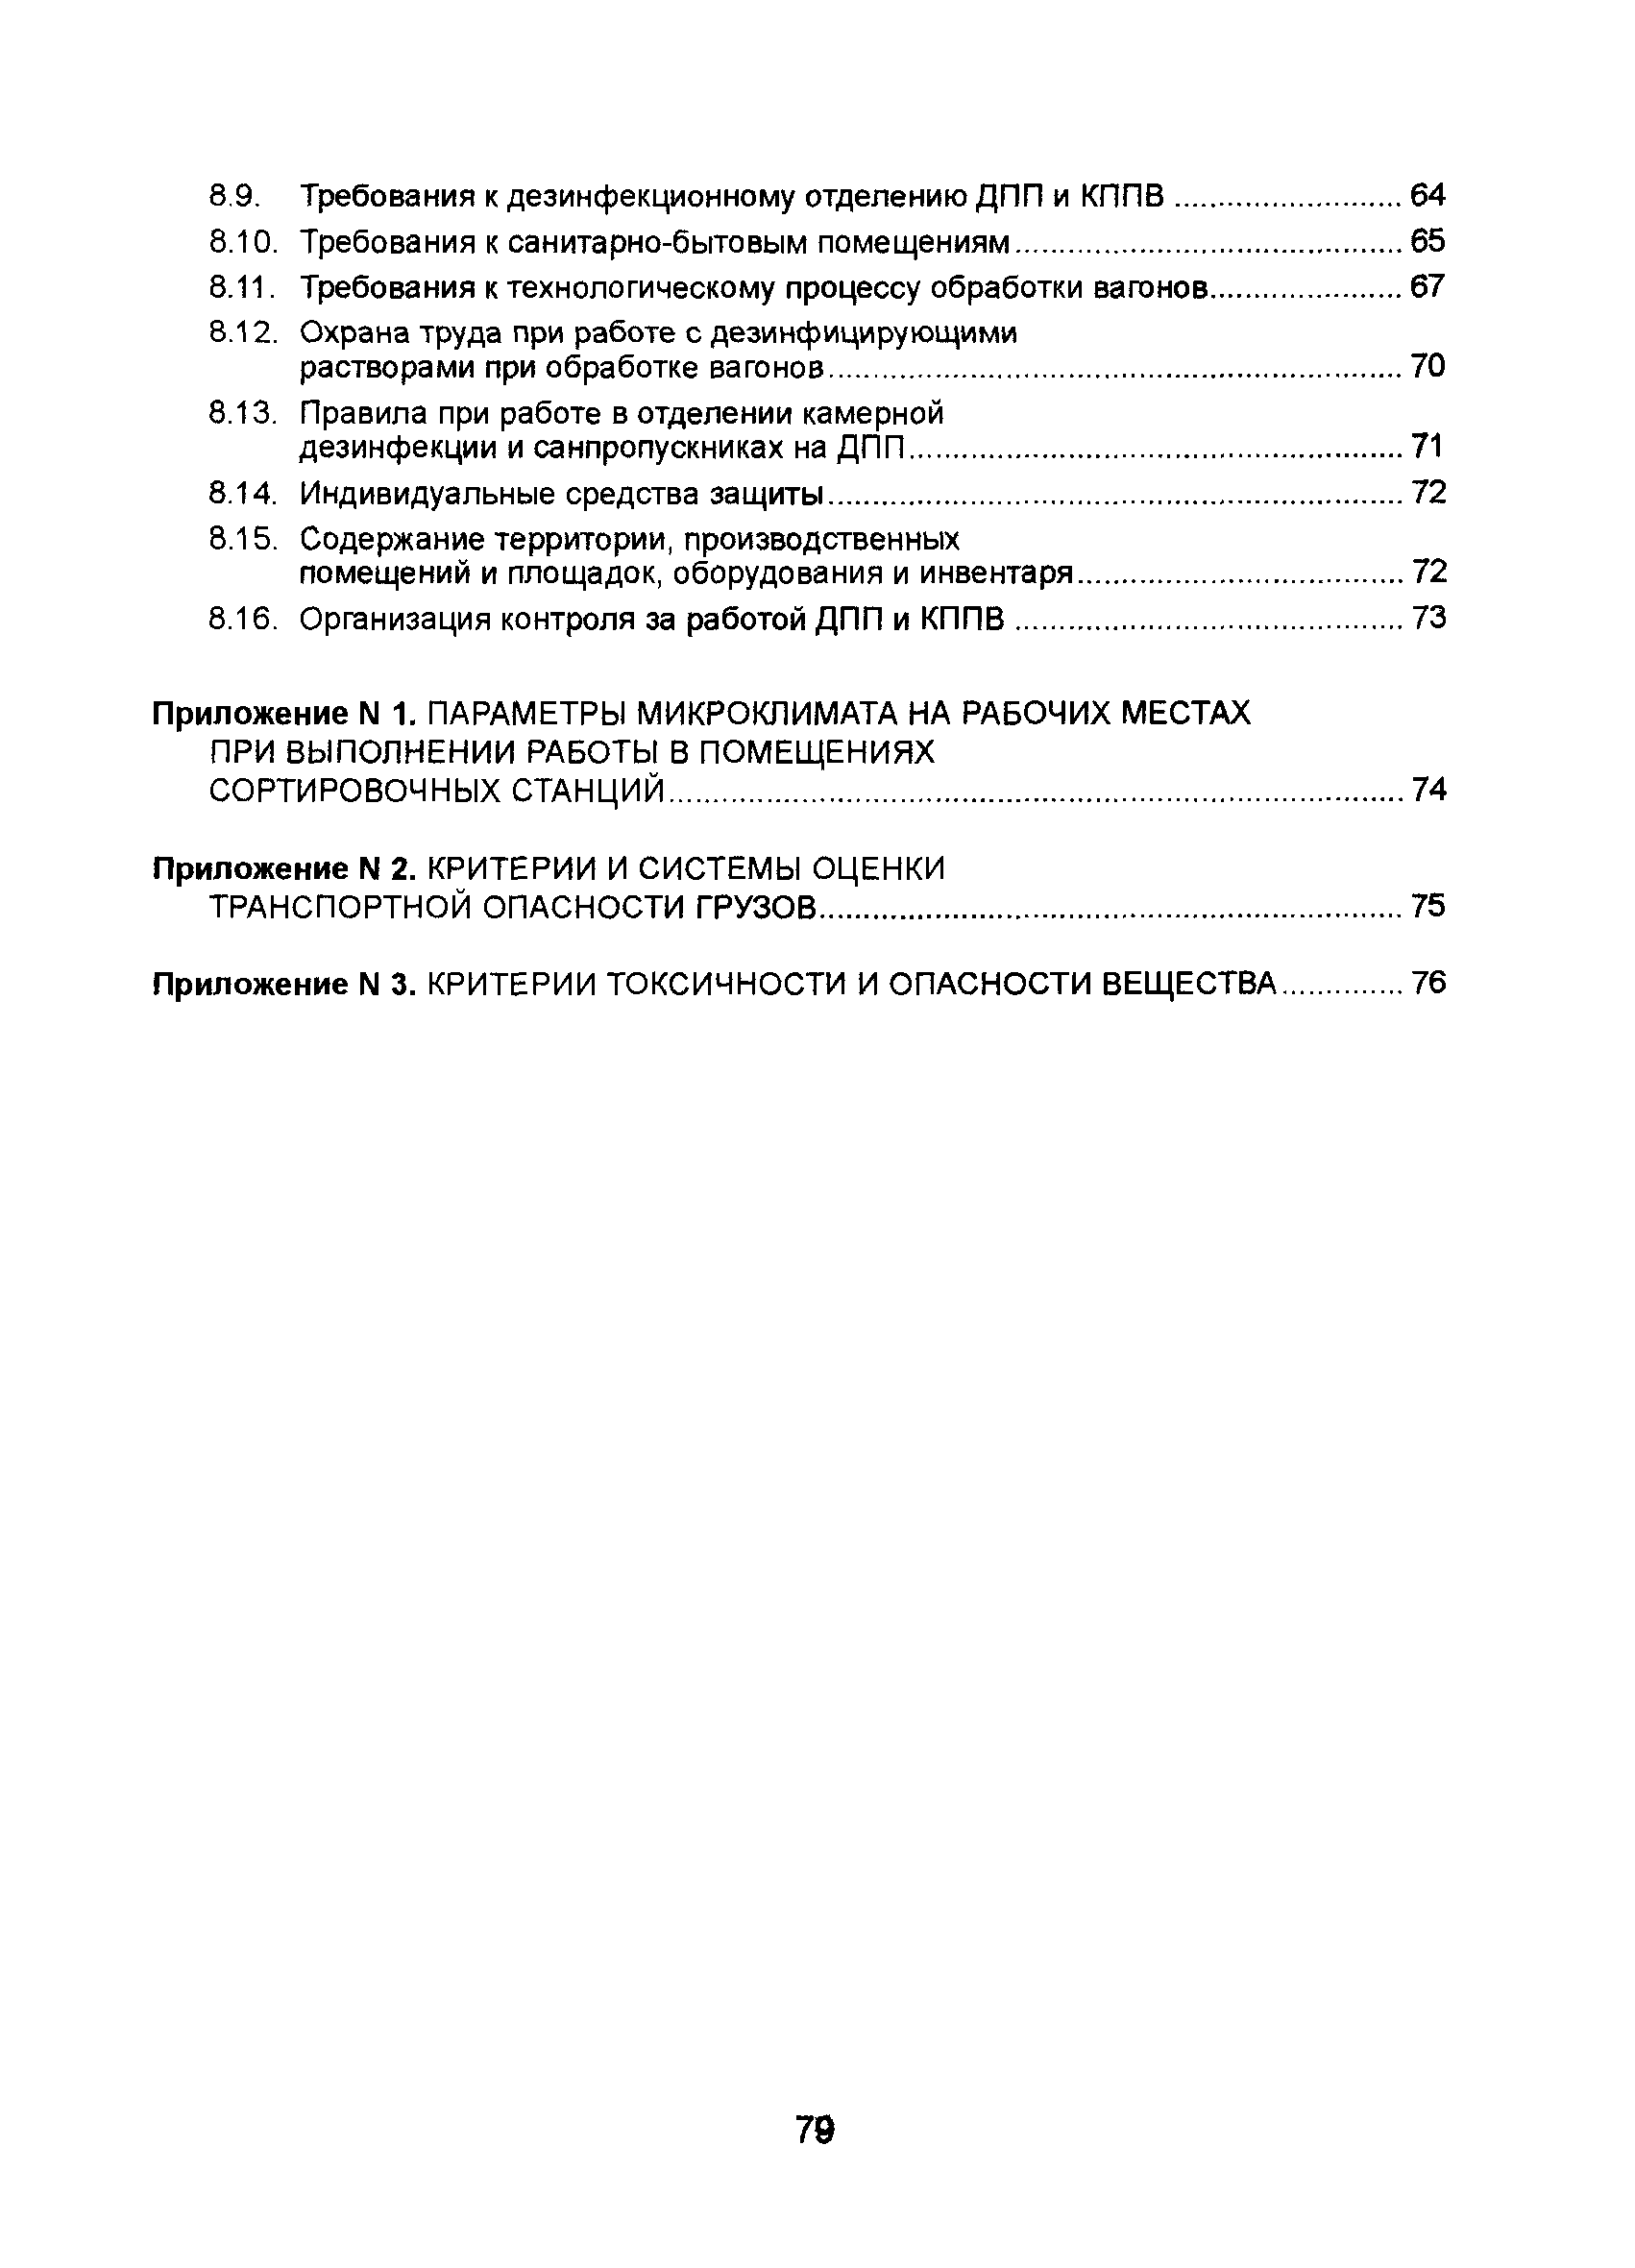 СП 2.5.1250-03